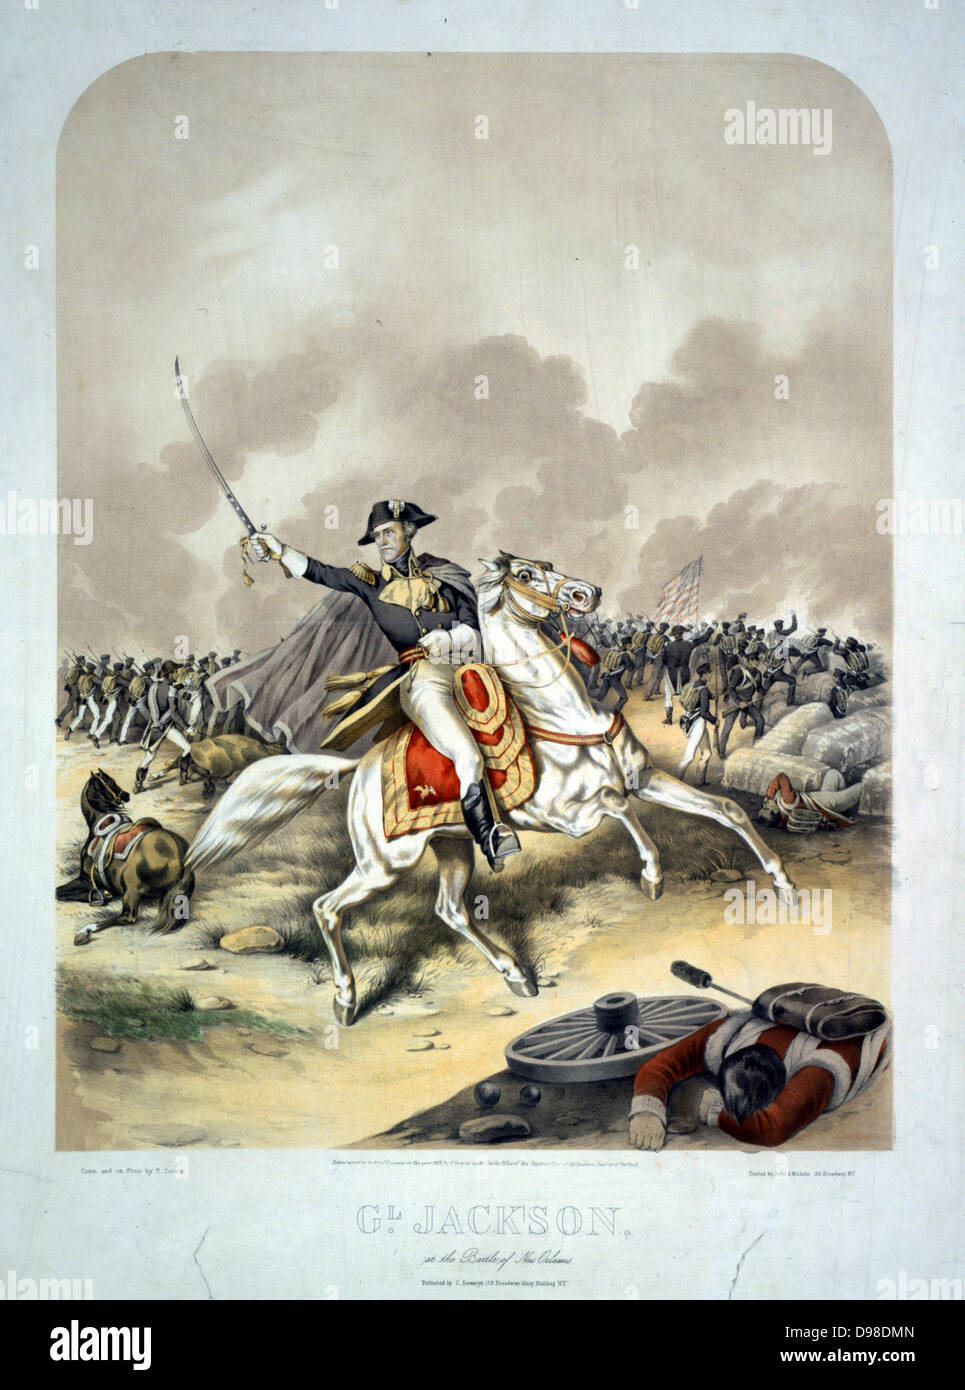 Anglo-amerikanische Krieg 1812-1815 (1812): General Andrew Jackson (1767-1845) in der Schlacht von New Orleans vom 8. Januar 1815, auf einem weißen Pferd, die amerikanischen Truppen zum Sieg in diesem führenden, die letzte große Schlacht des Krieges. Farbige Lithographie von C Severin, c 1856. Stockfoto